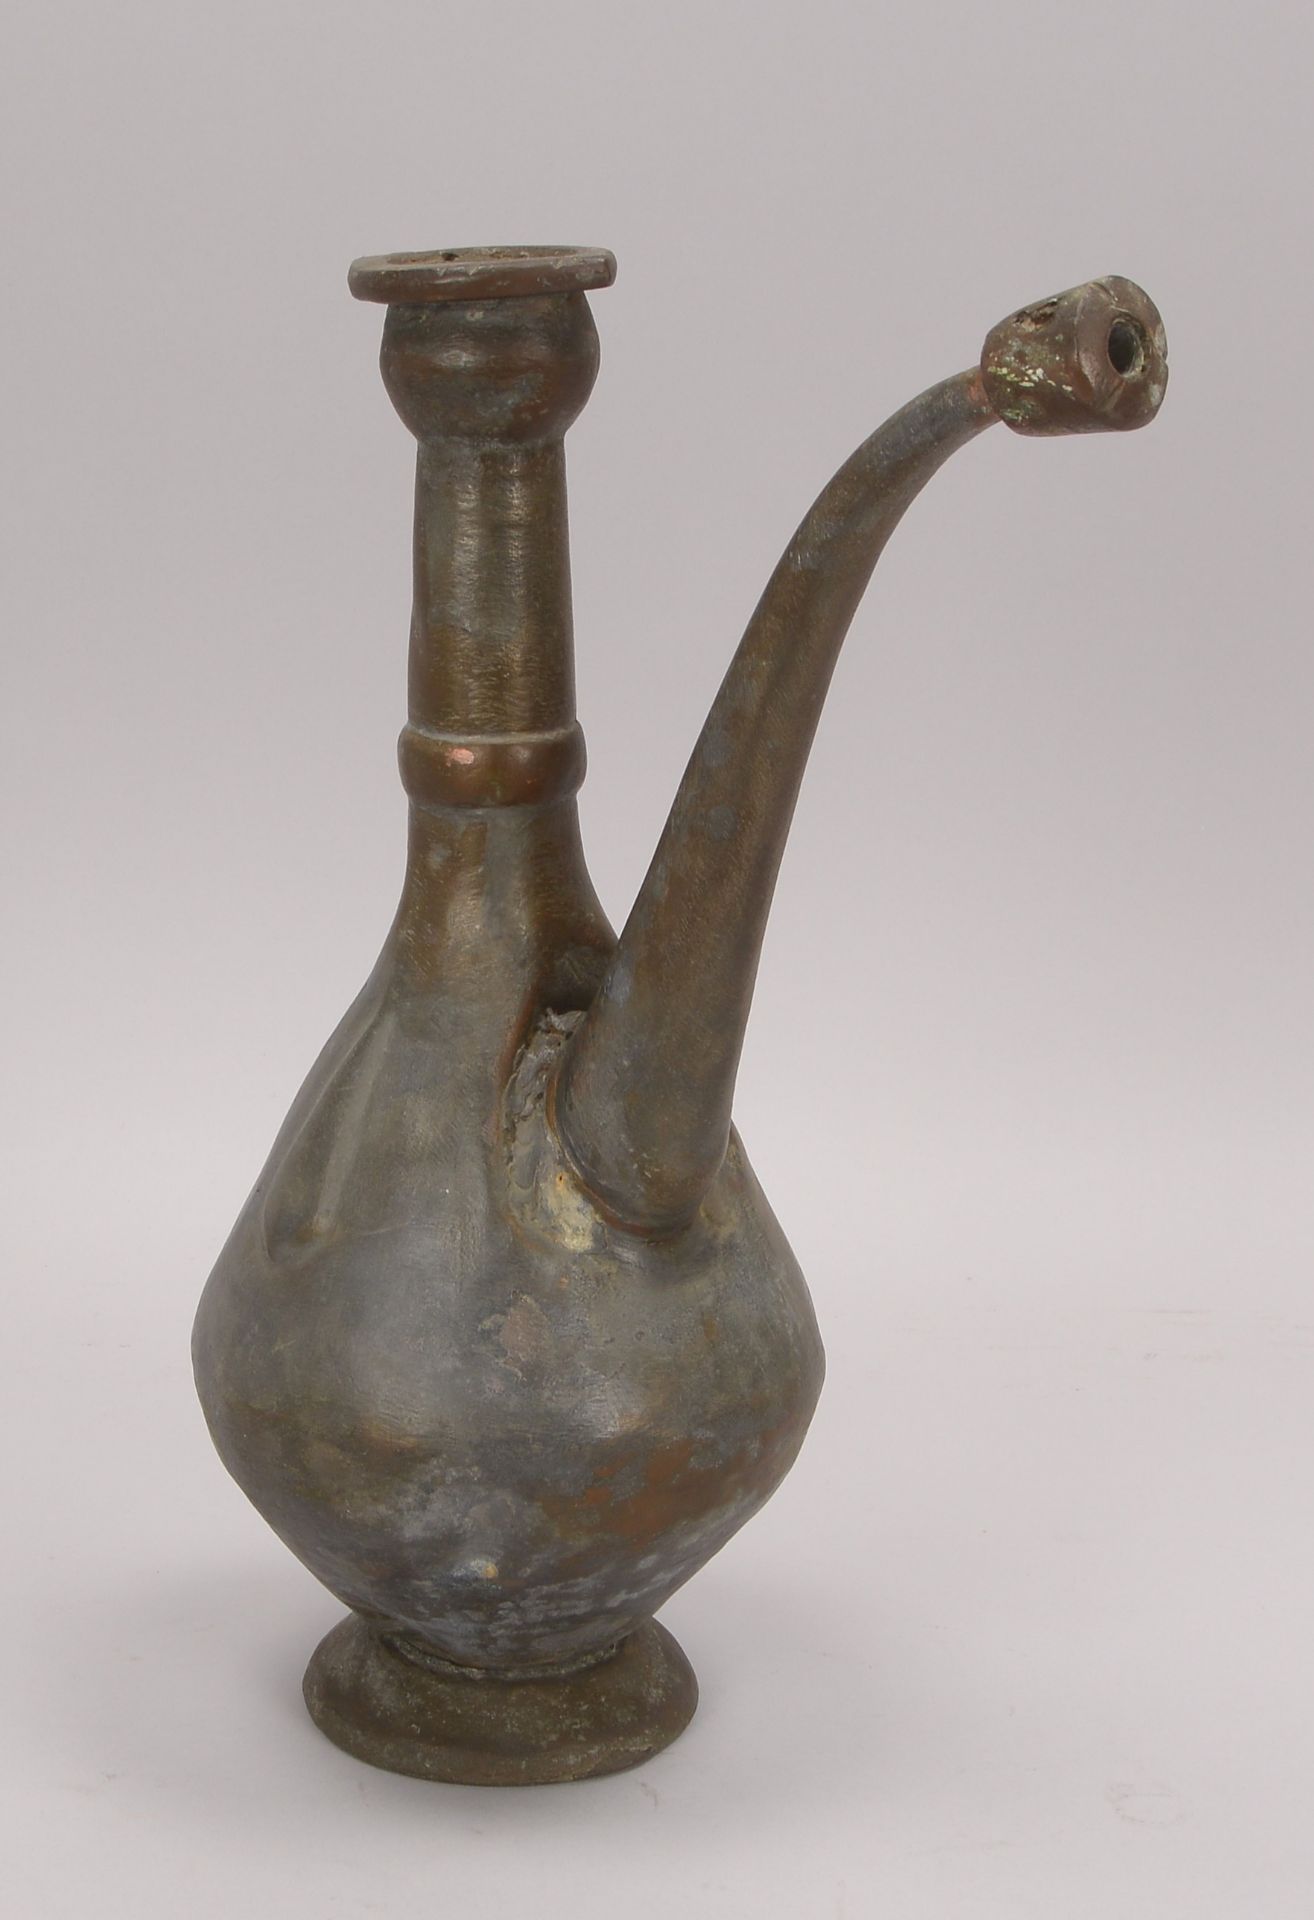 Kanne (osmanisch, wohl 17. Jahrhundert), Kupfer, Hoehe 38 cm